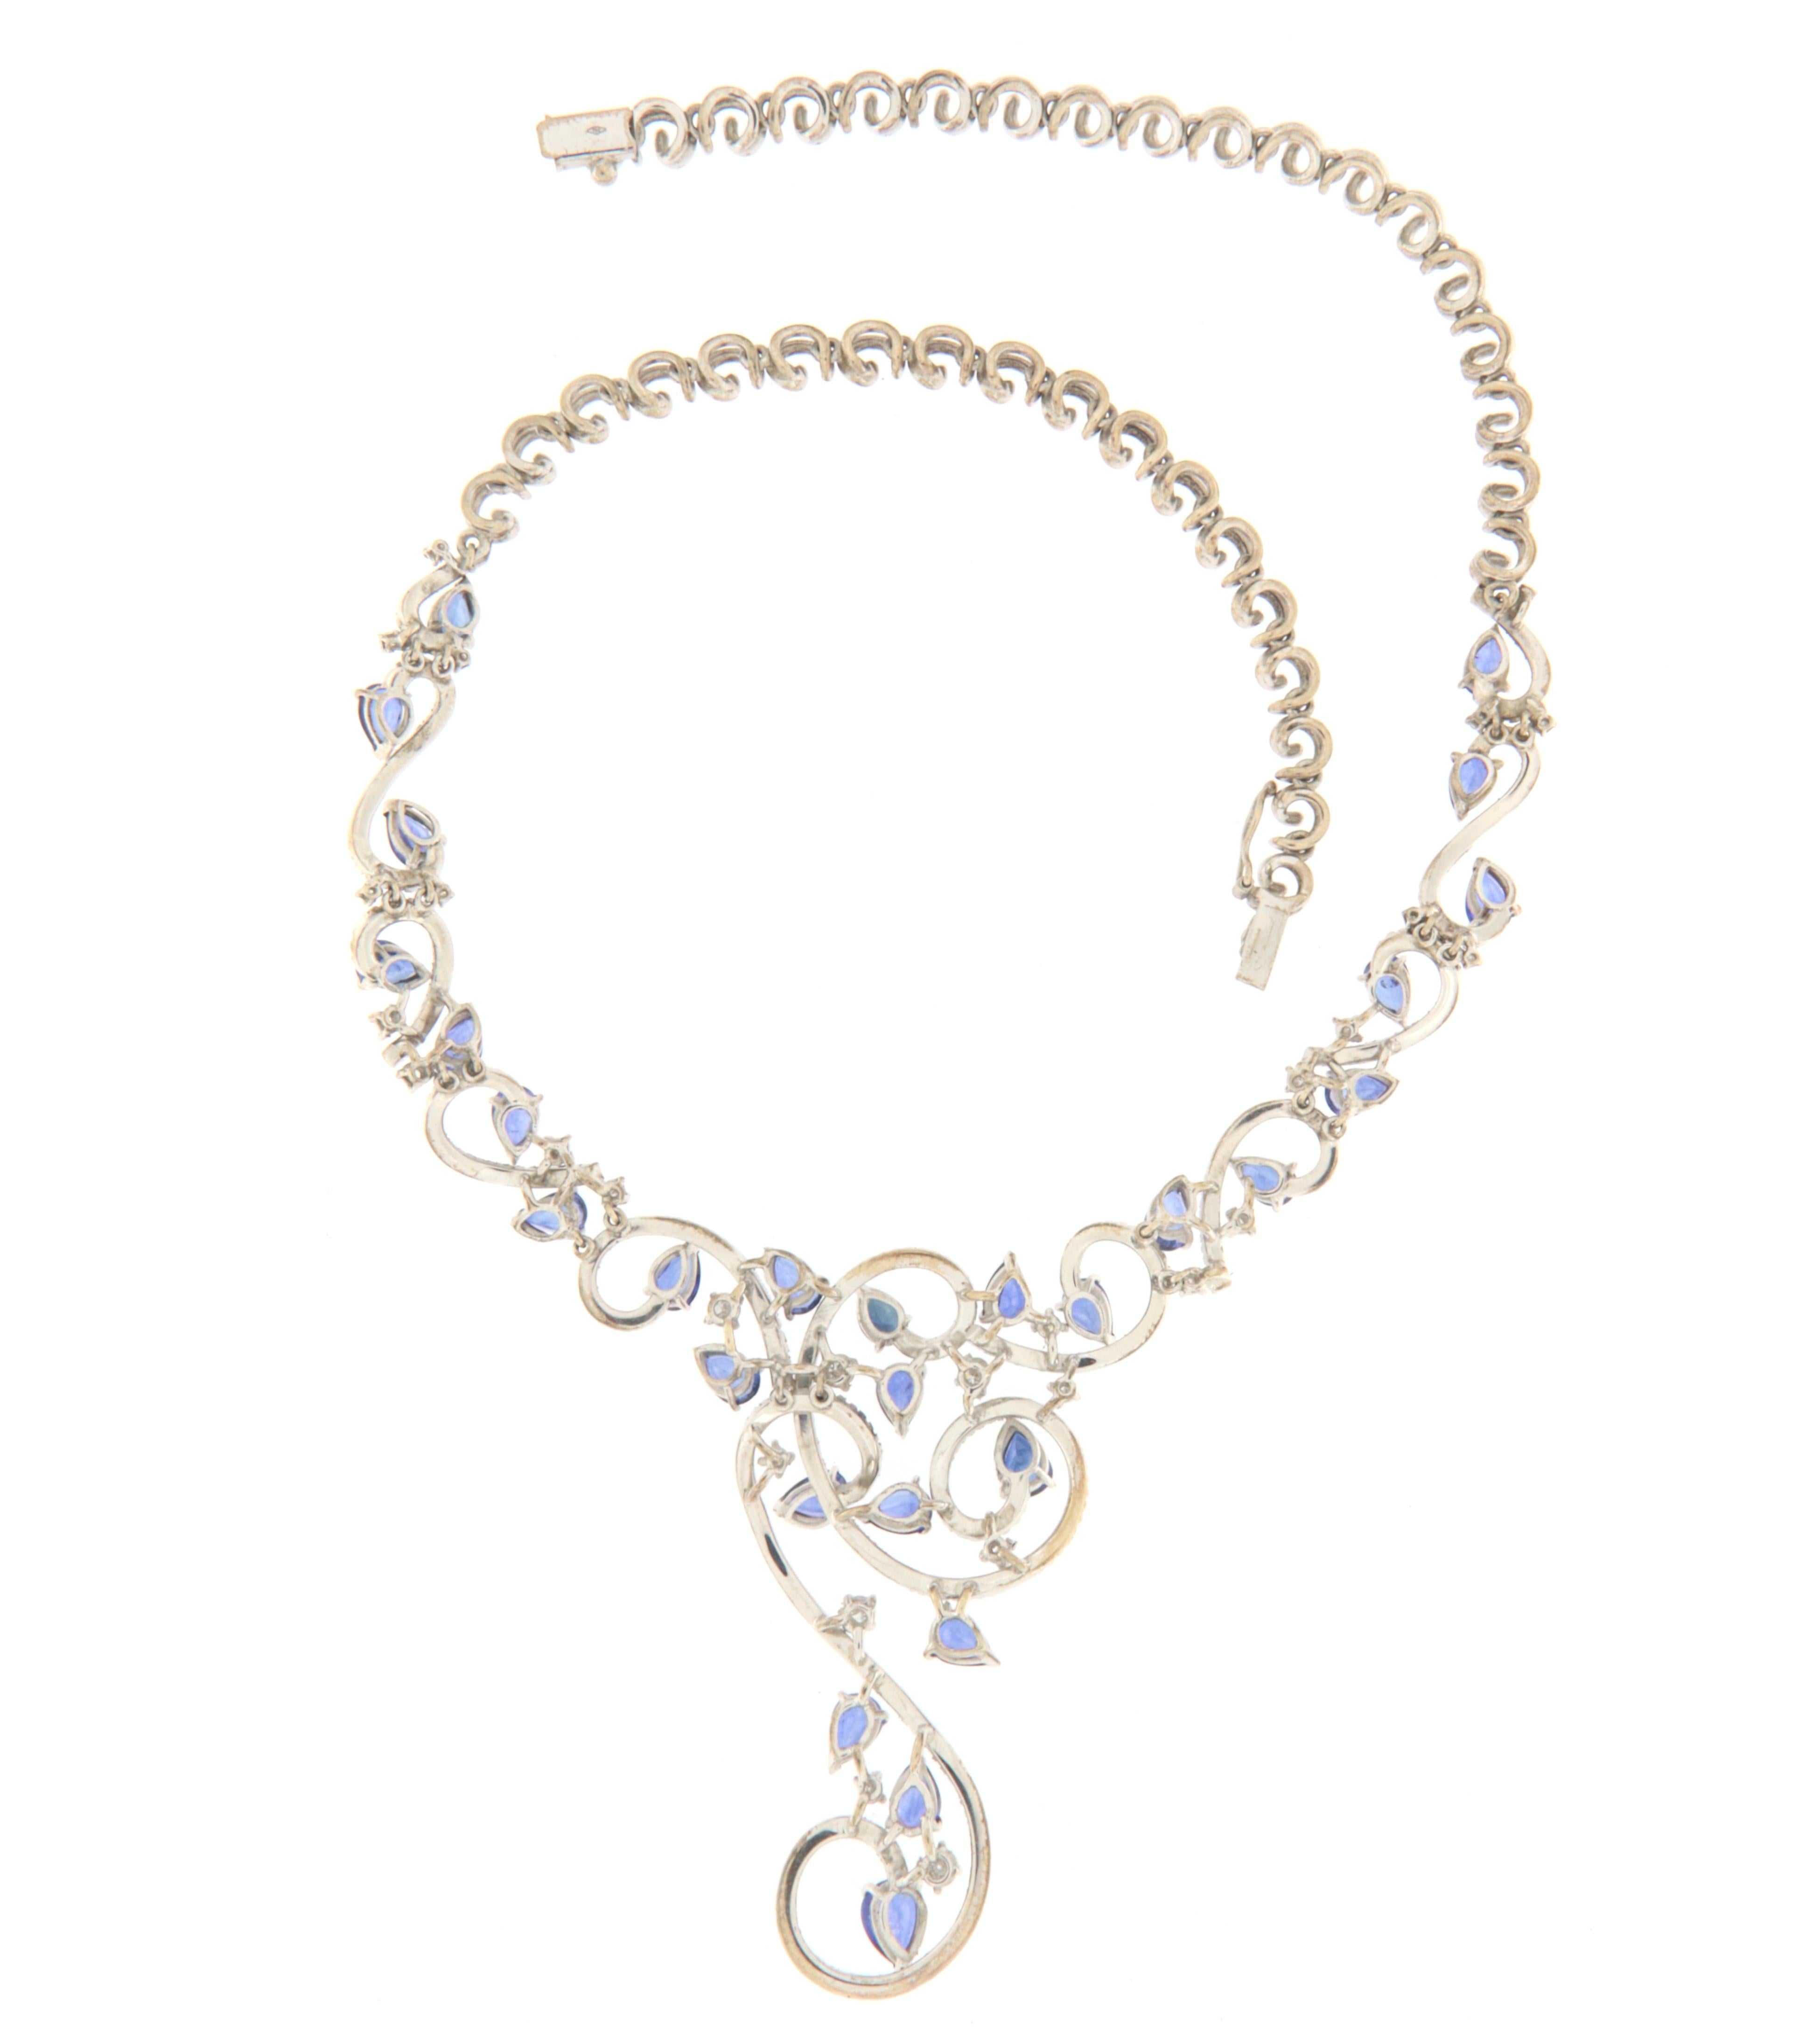 Brilliant Cut Sapphires Diamonds 18 Karat White Gold Choker Necklace For Sale